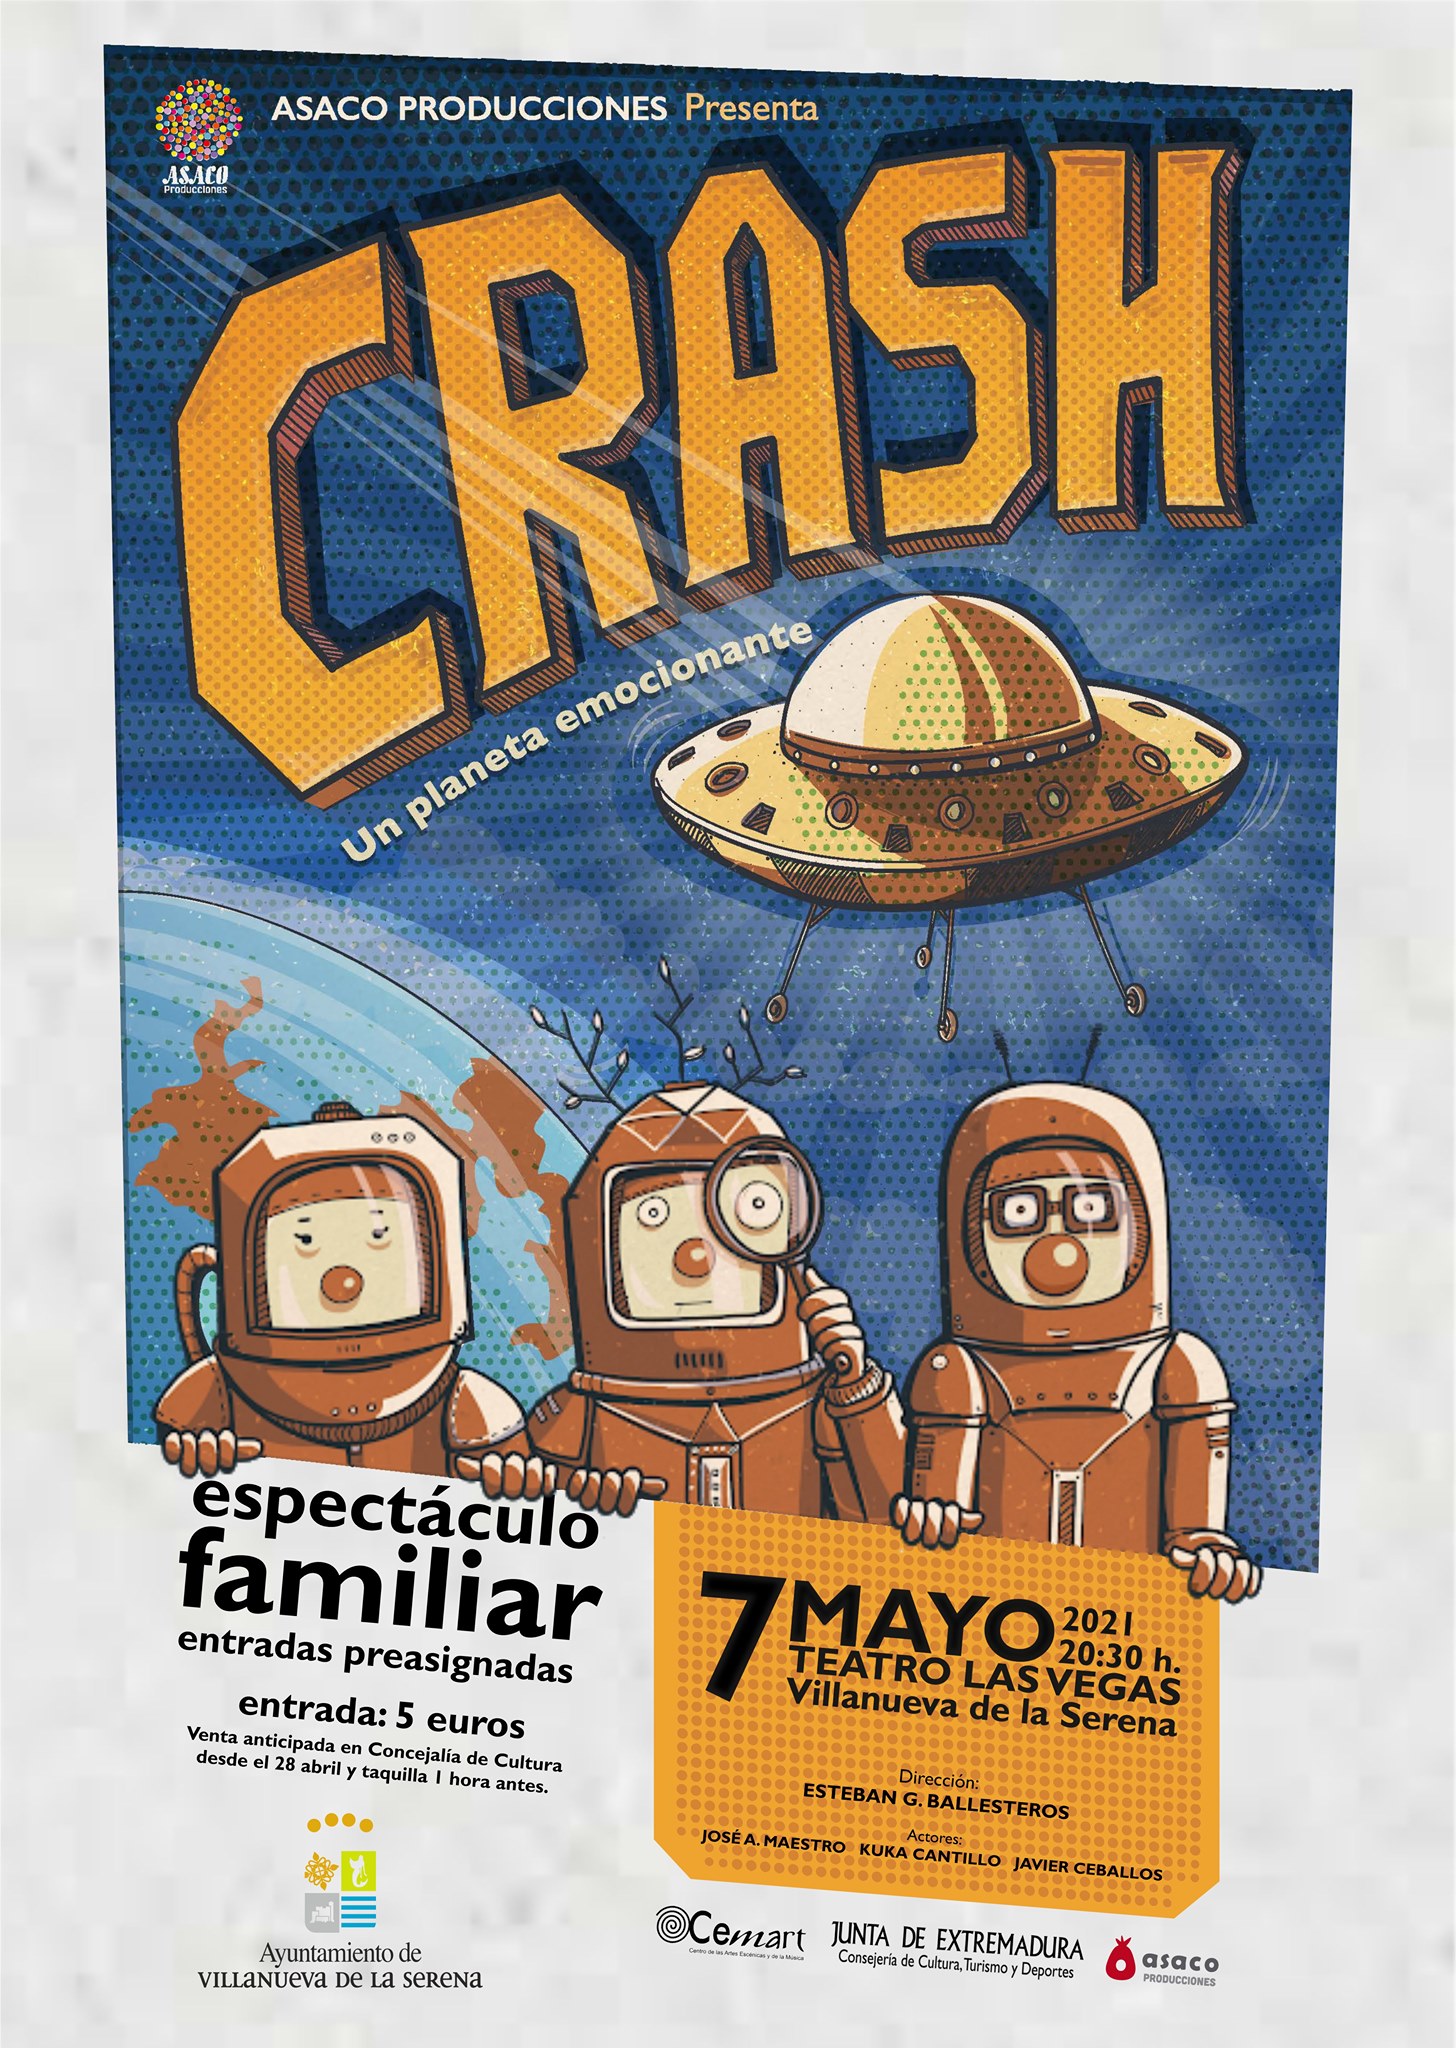 Teatro “Crash. Un planeta emocionante” de Asaco Producciones. Dirección Esteban G. Ballesteros.